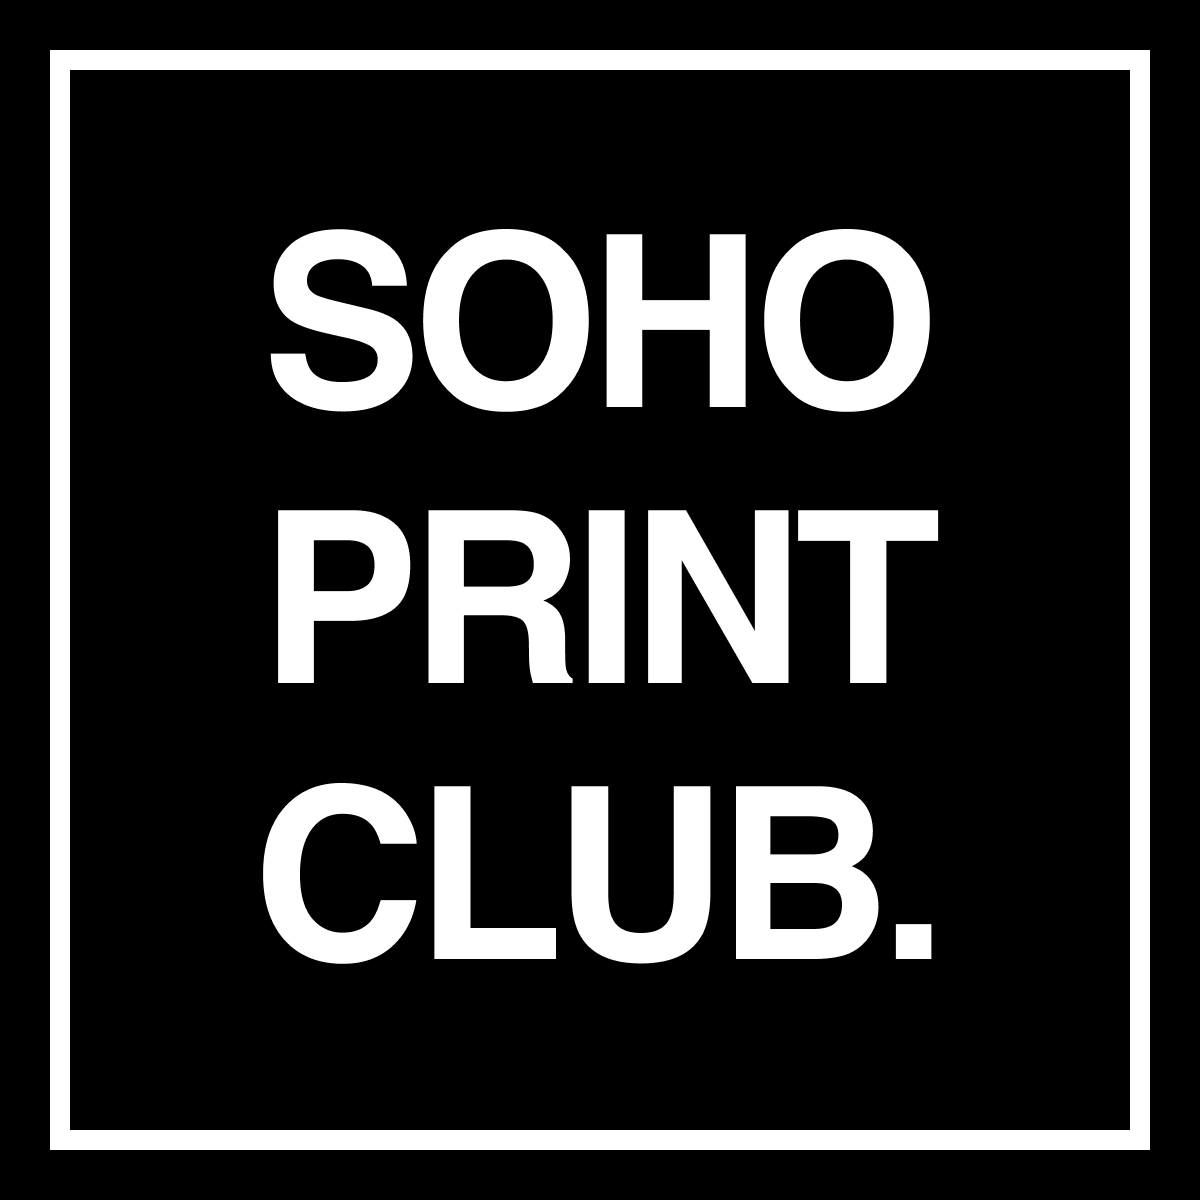 Soho Print Club